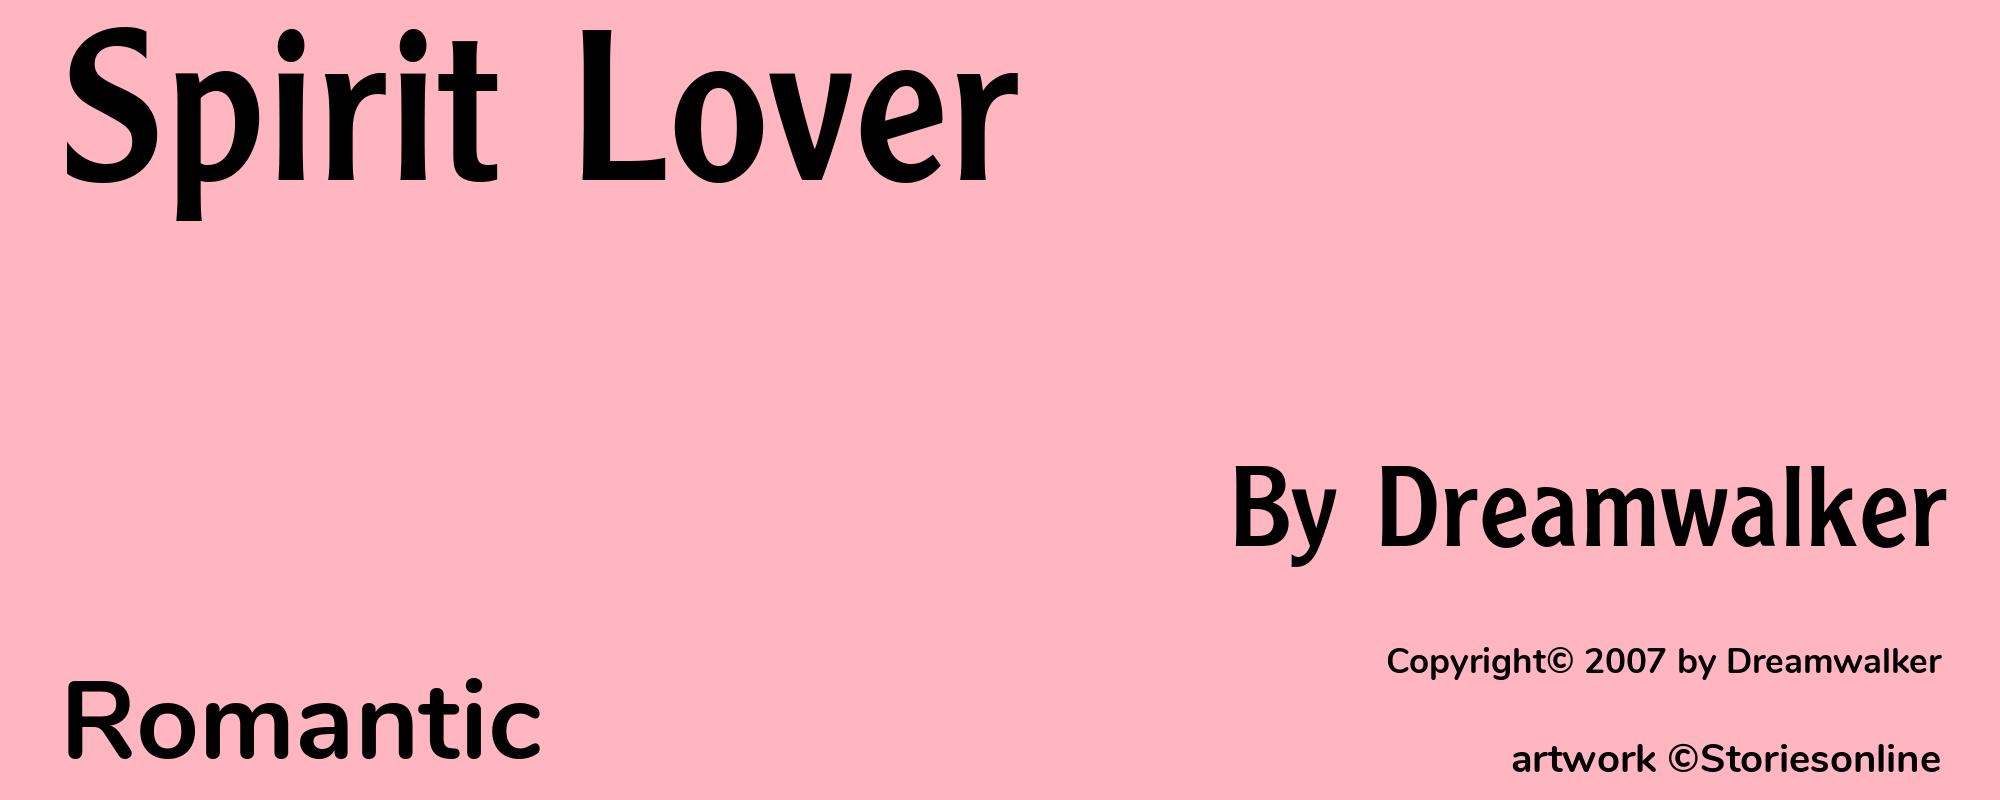 Spirit Lover - Cover